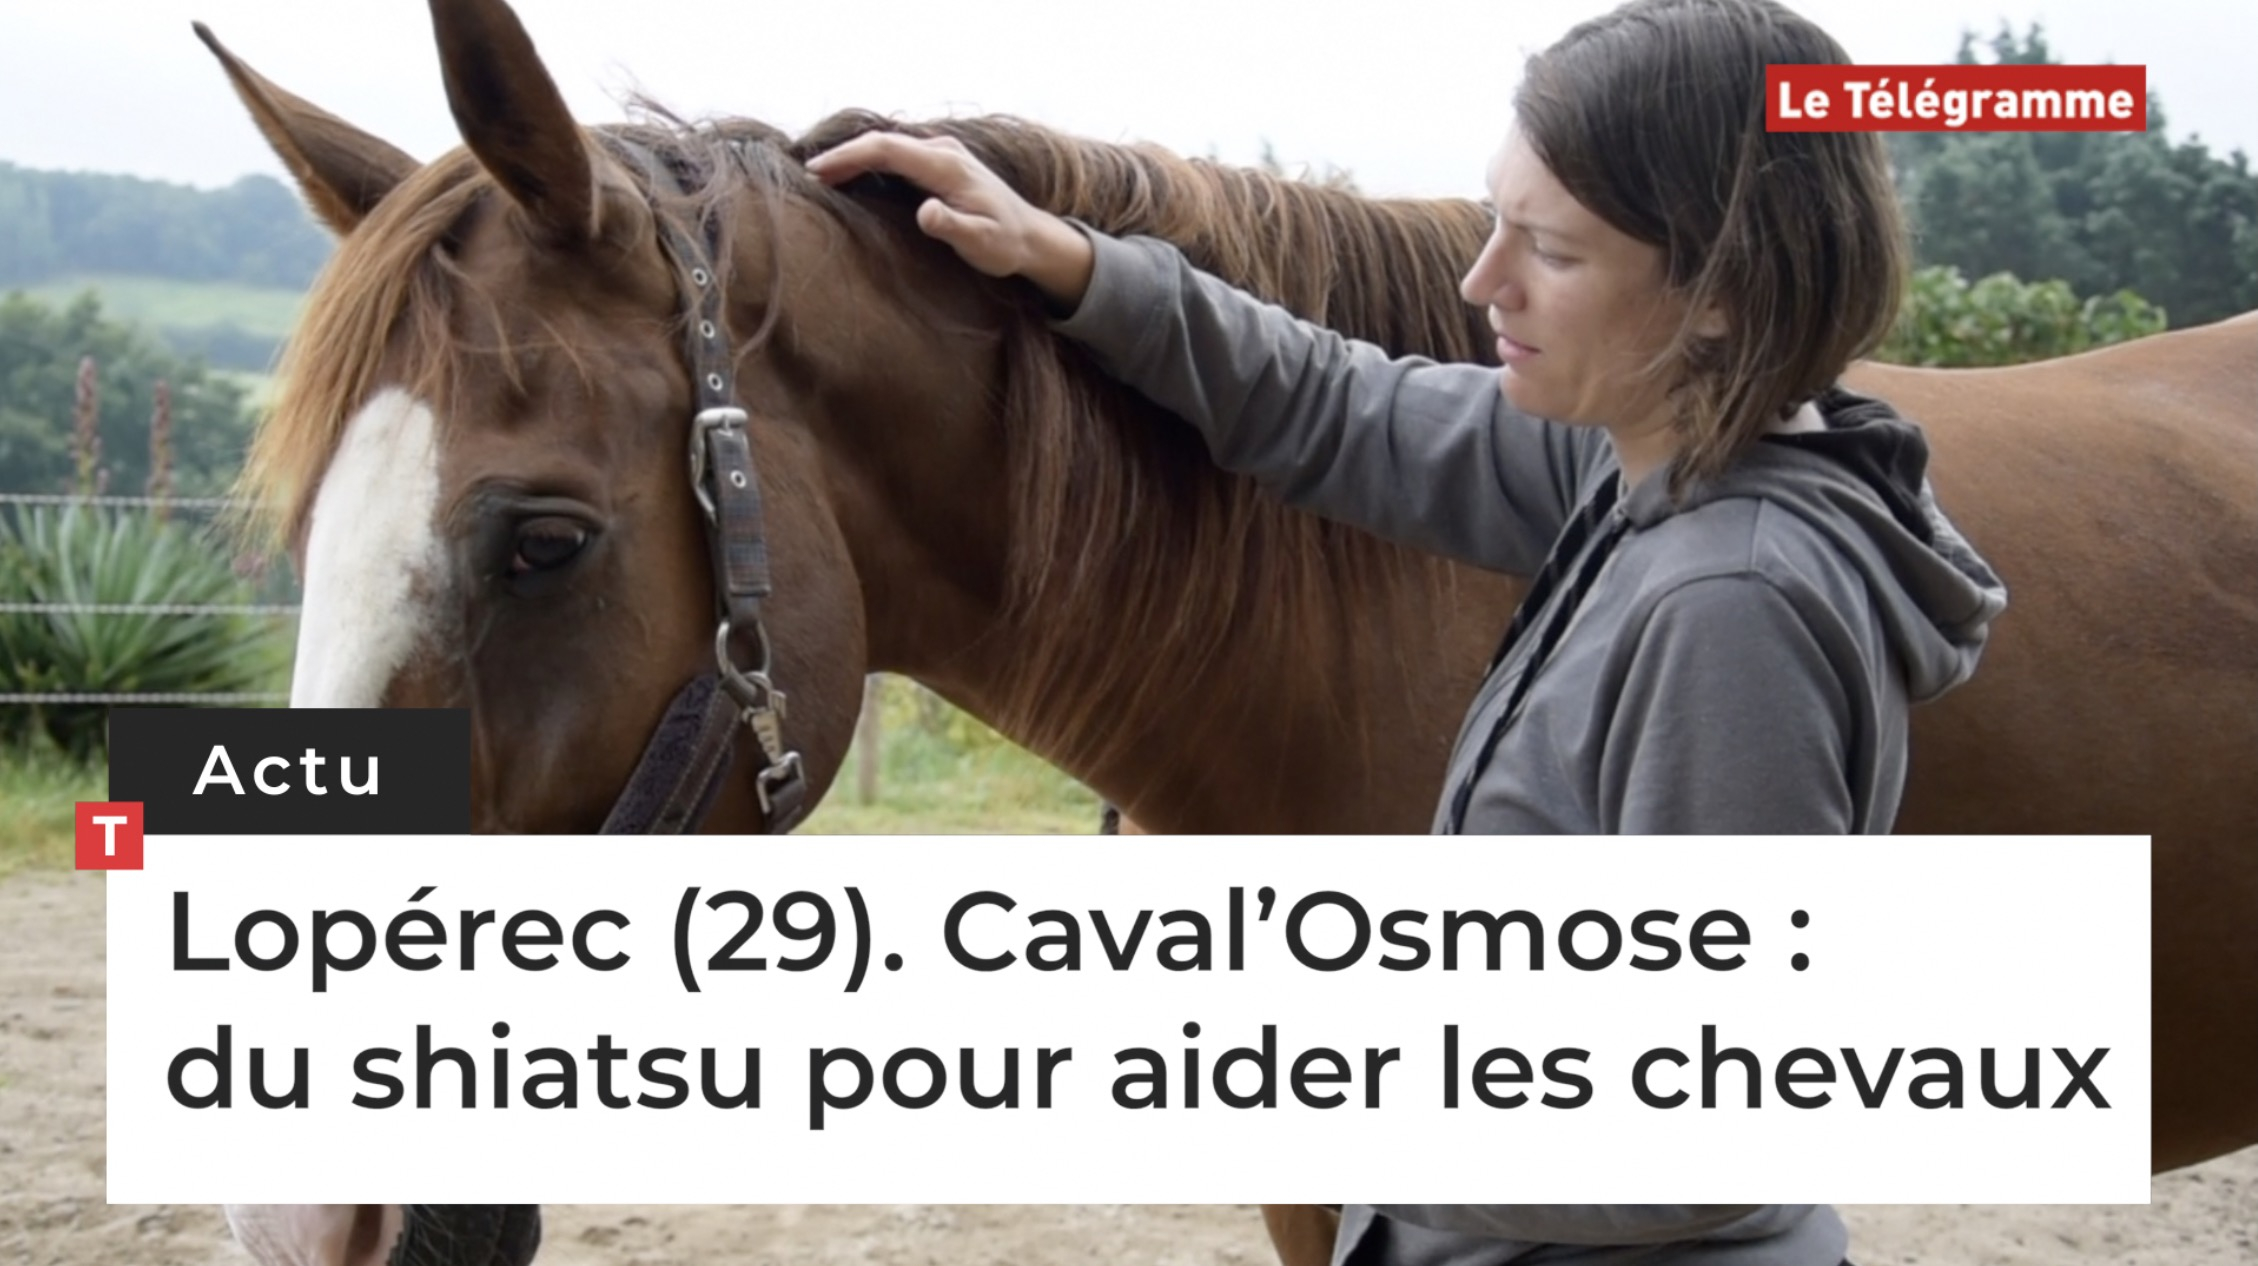 Lopérec (29). Caval’Osmose : du shiatsu pour aider les chevaux  (Le Télégramme)